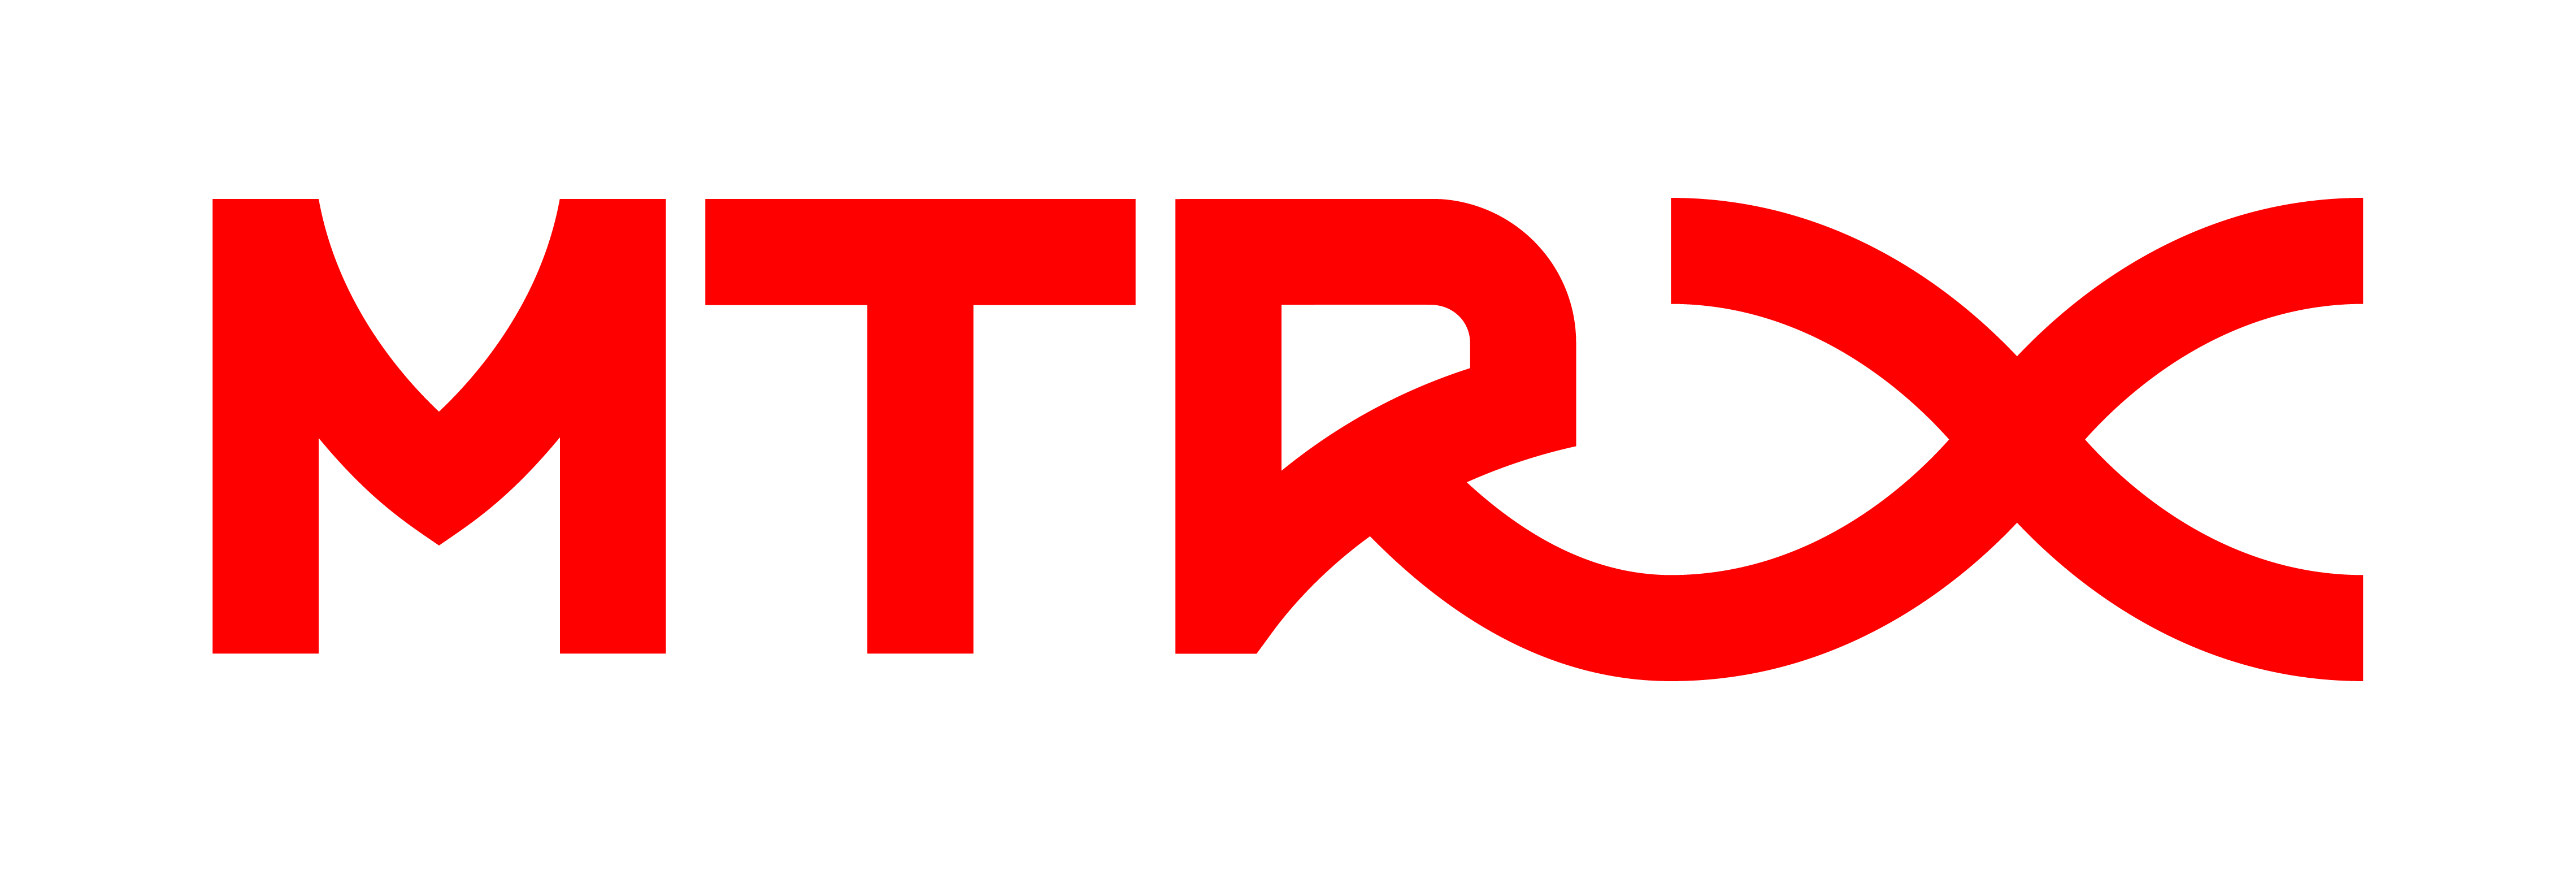 MTR Express logo